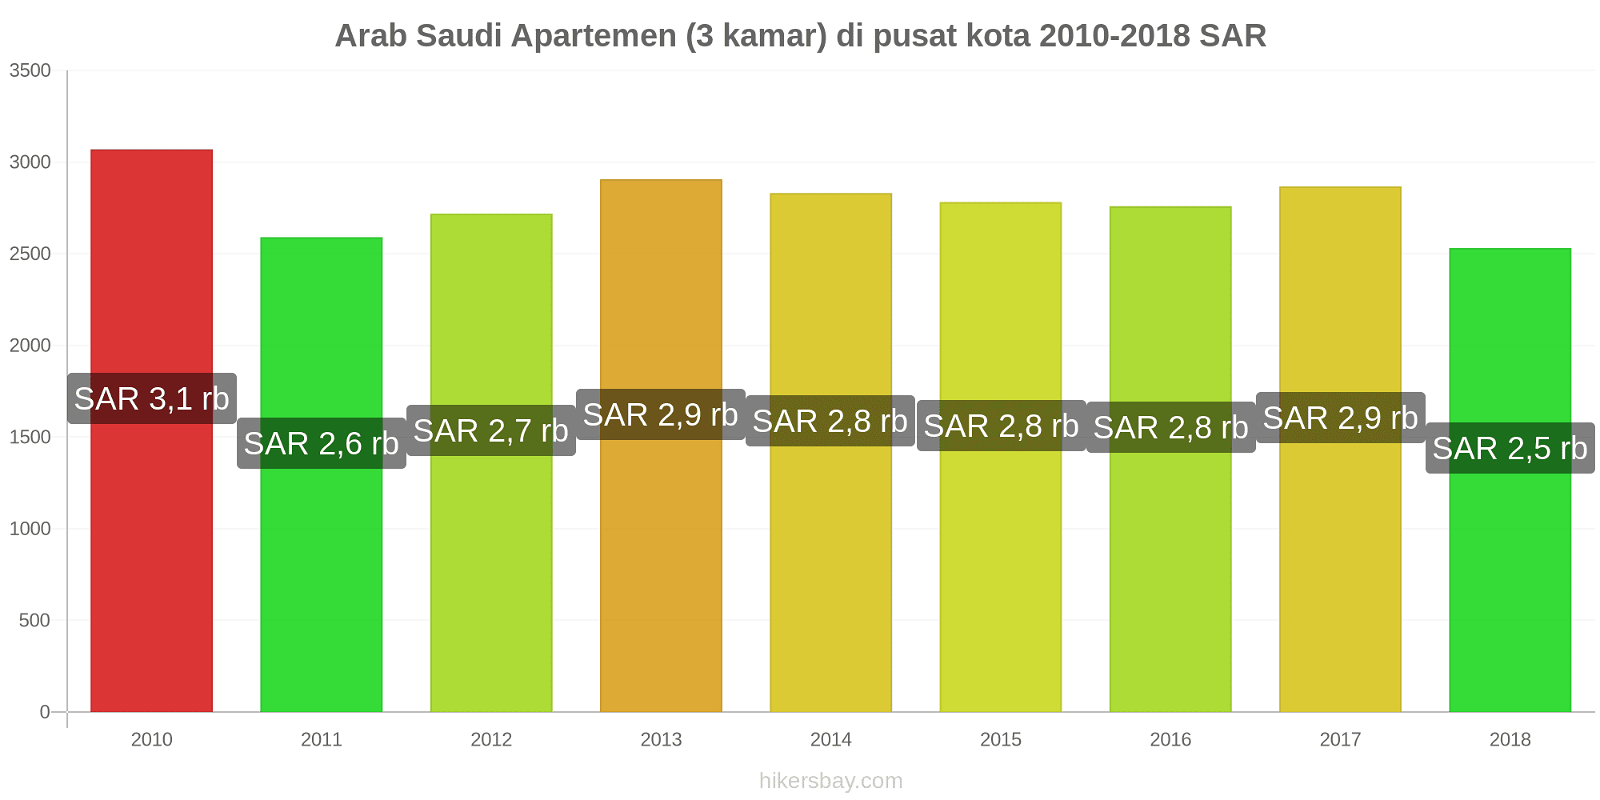 Arab Saudi perubahan harga Apartemen (3 kamar) di pusat kota hikersbay.com